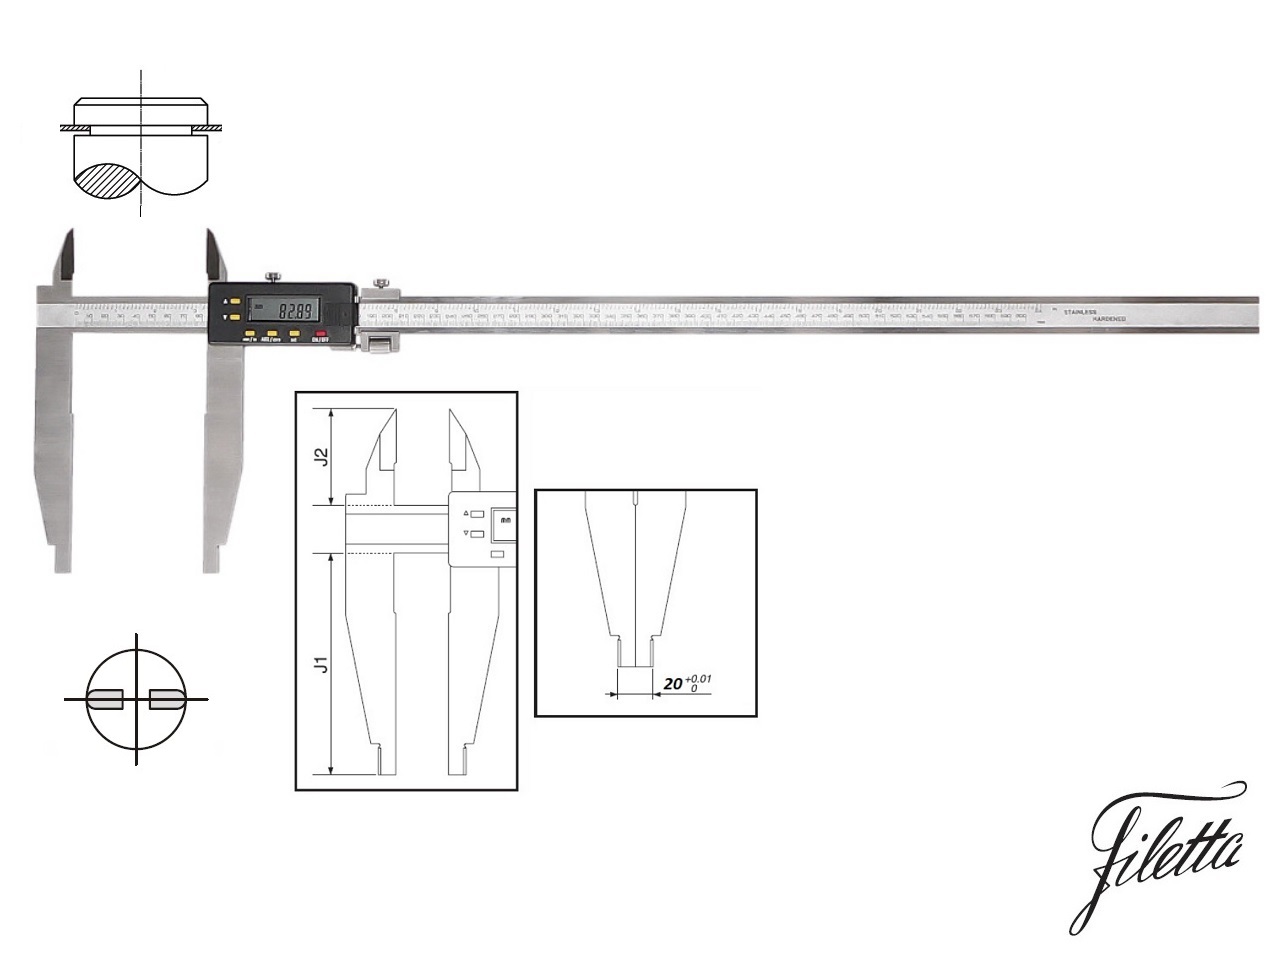 Digitální posuvné měřítko Filetta 0-2000 mm s měřicími nožíky pro vnější měření